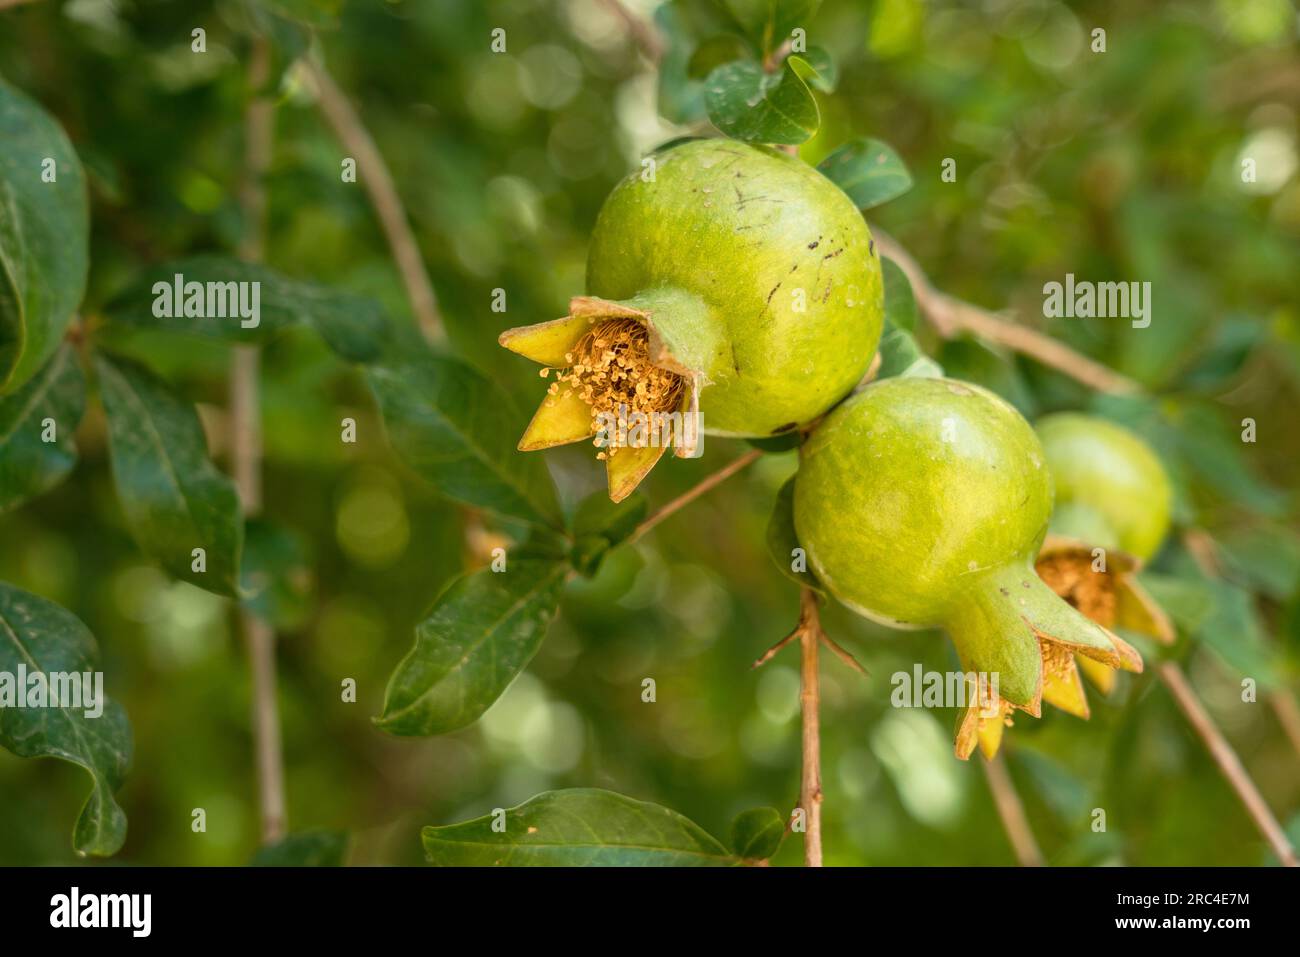 Palestina, territori palestinesi occupati, Gerico, Pomegranate Fruit, Punica granatum, Su un albero a Gerico, territorio occupato della Cisgiordania. Foto Stock